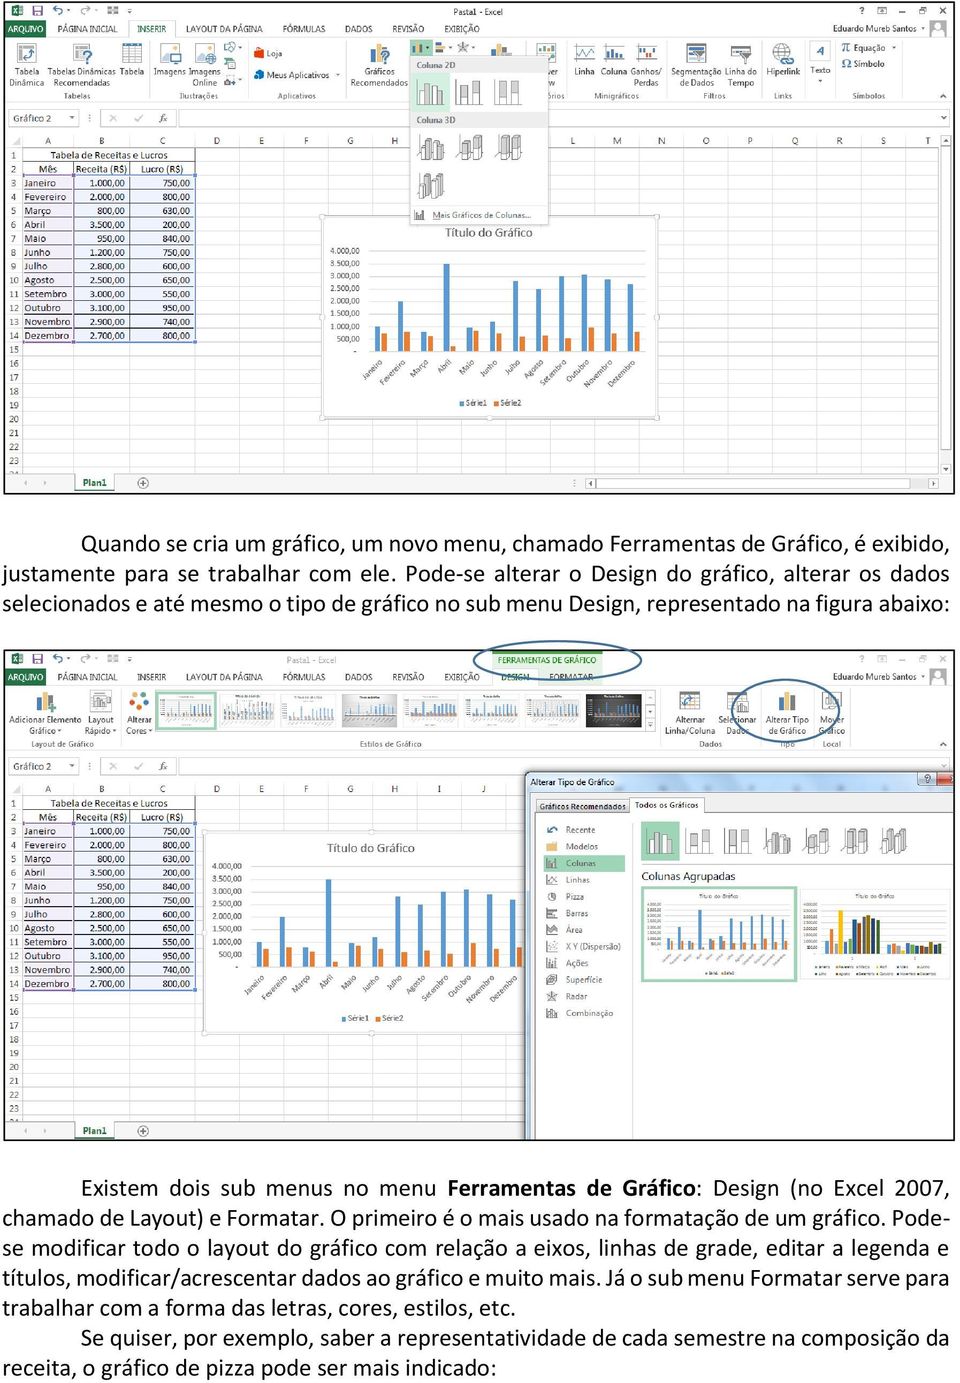 Gráfico: Design (no Excel 2007, chamado de Layout) e Formatar. O primeiro é o mais usado na formatação de um gráfico.